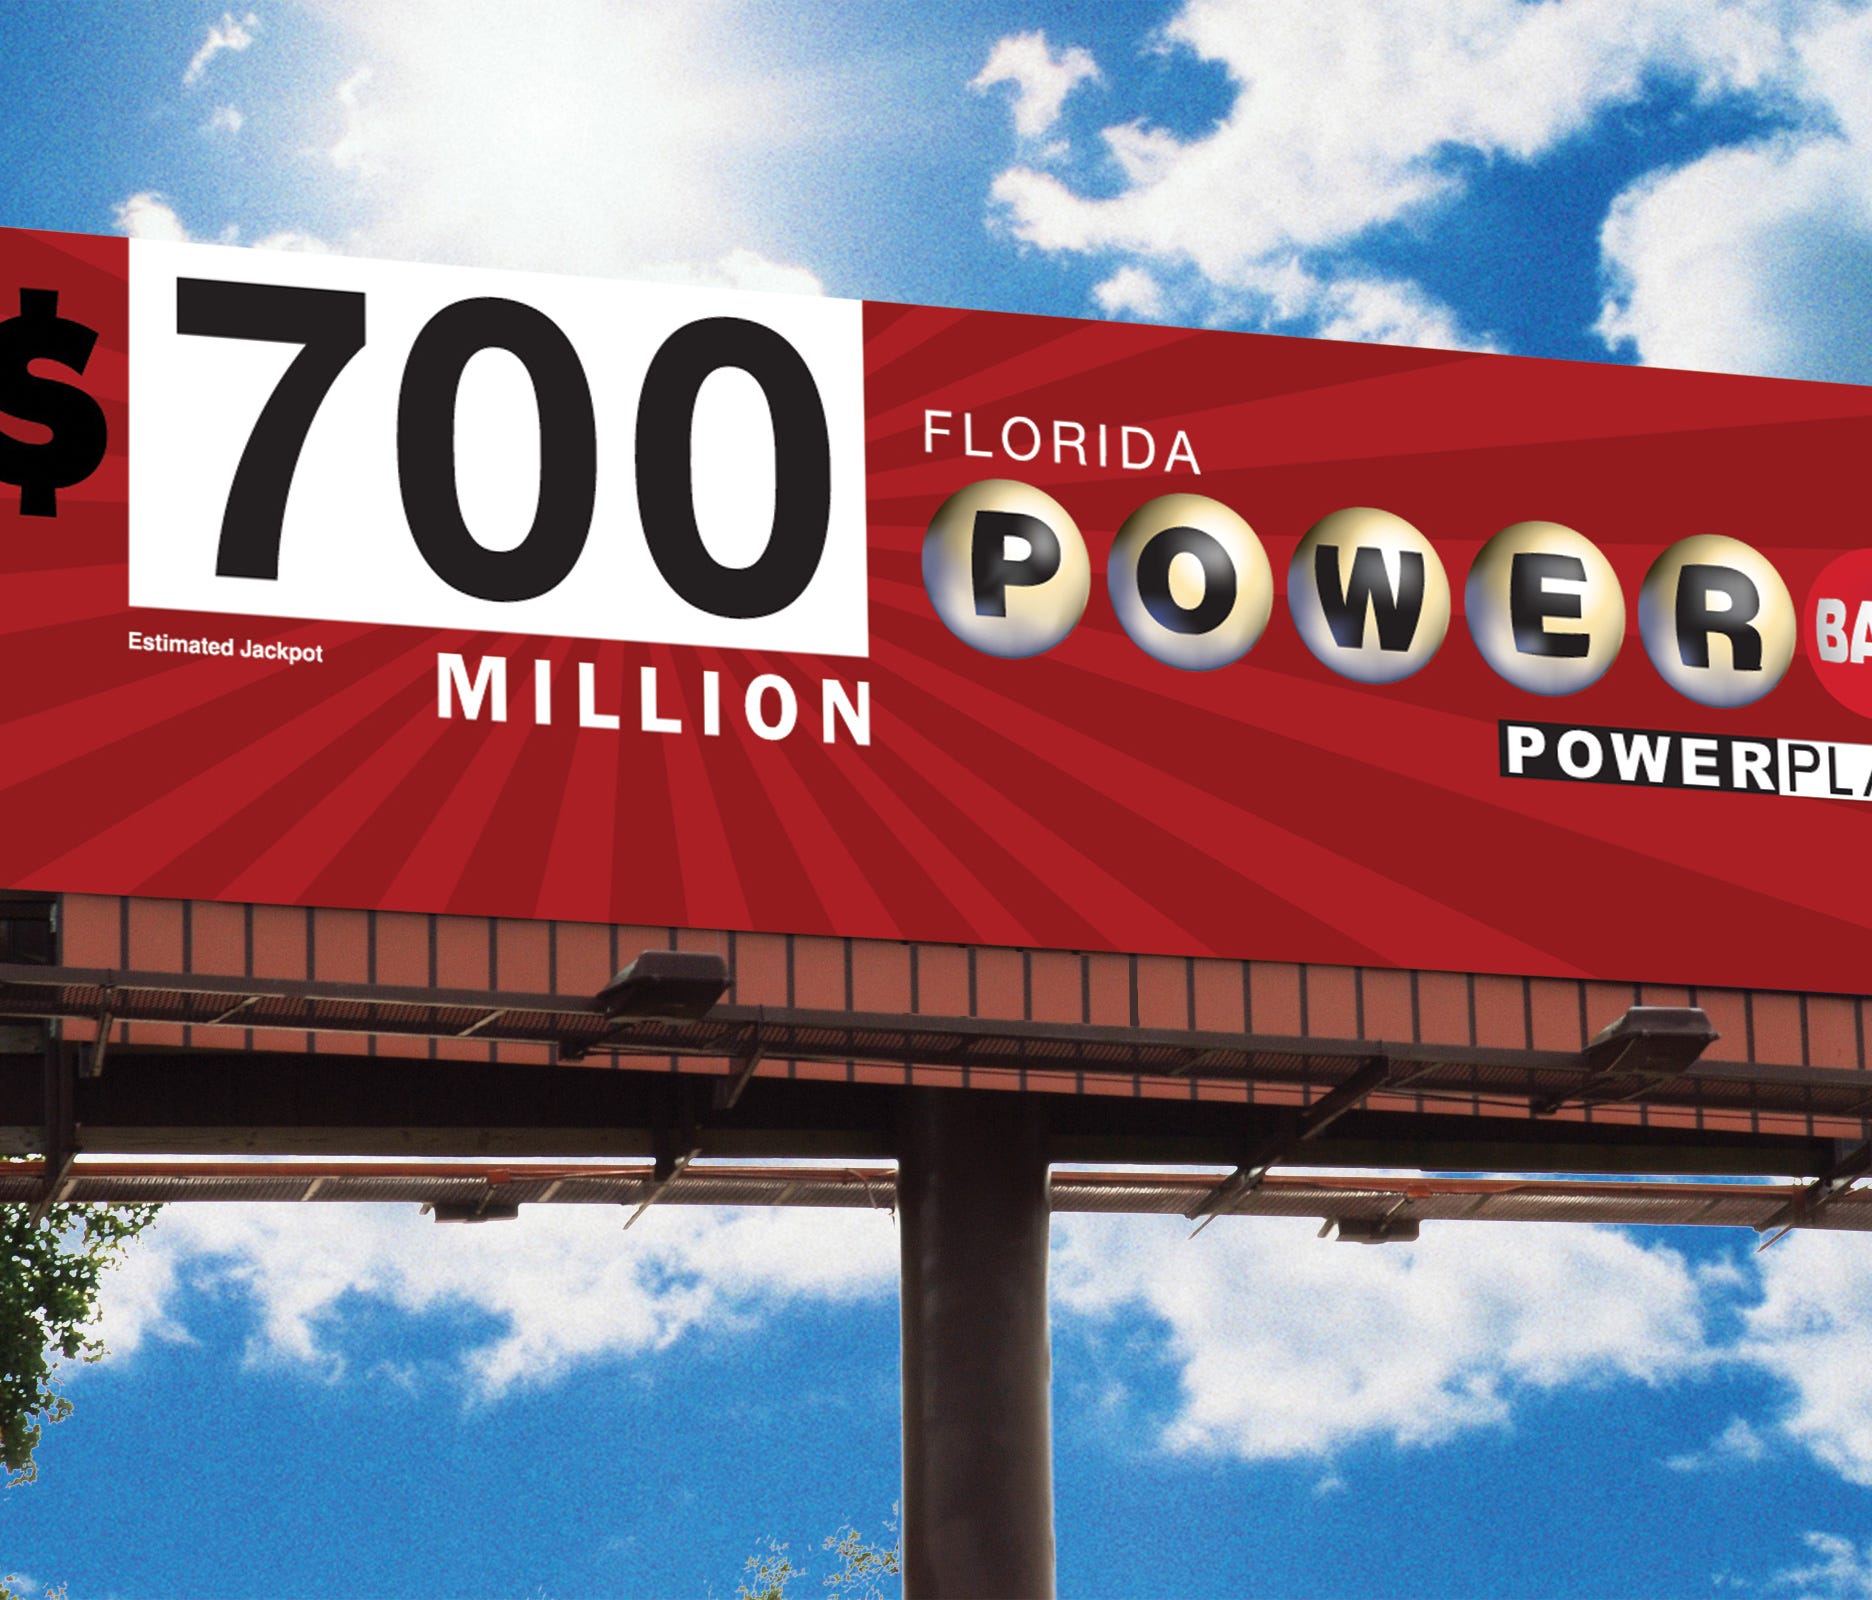 The Powerball jackpot has climbed to $700 million.